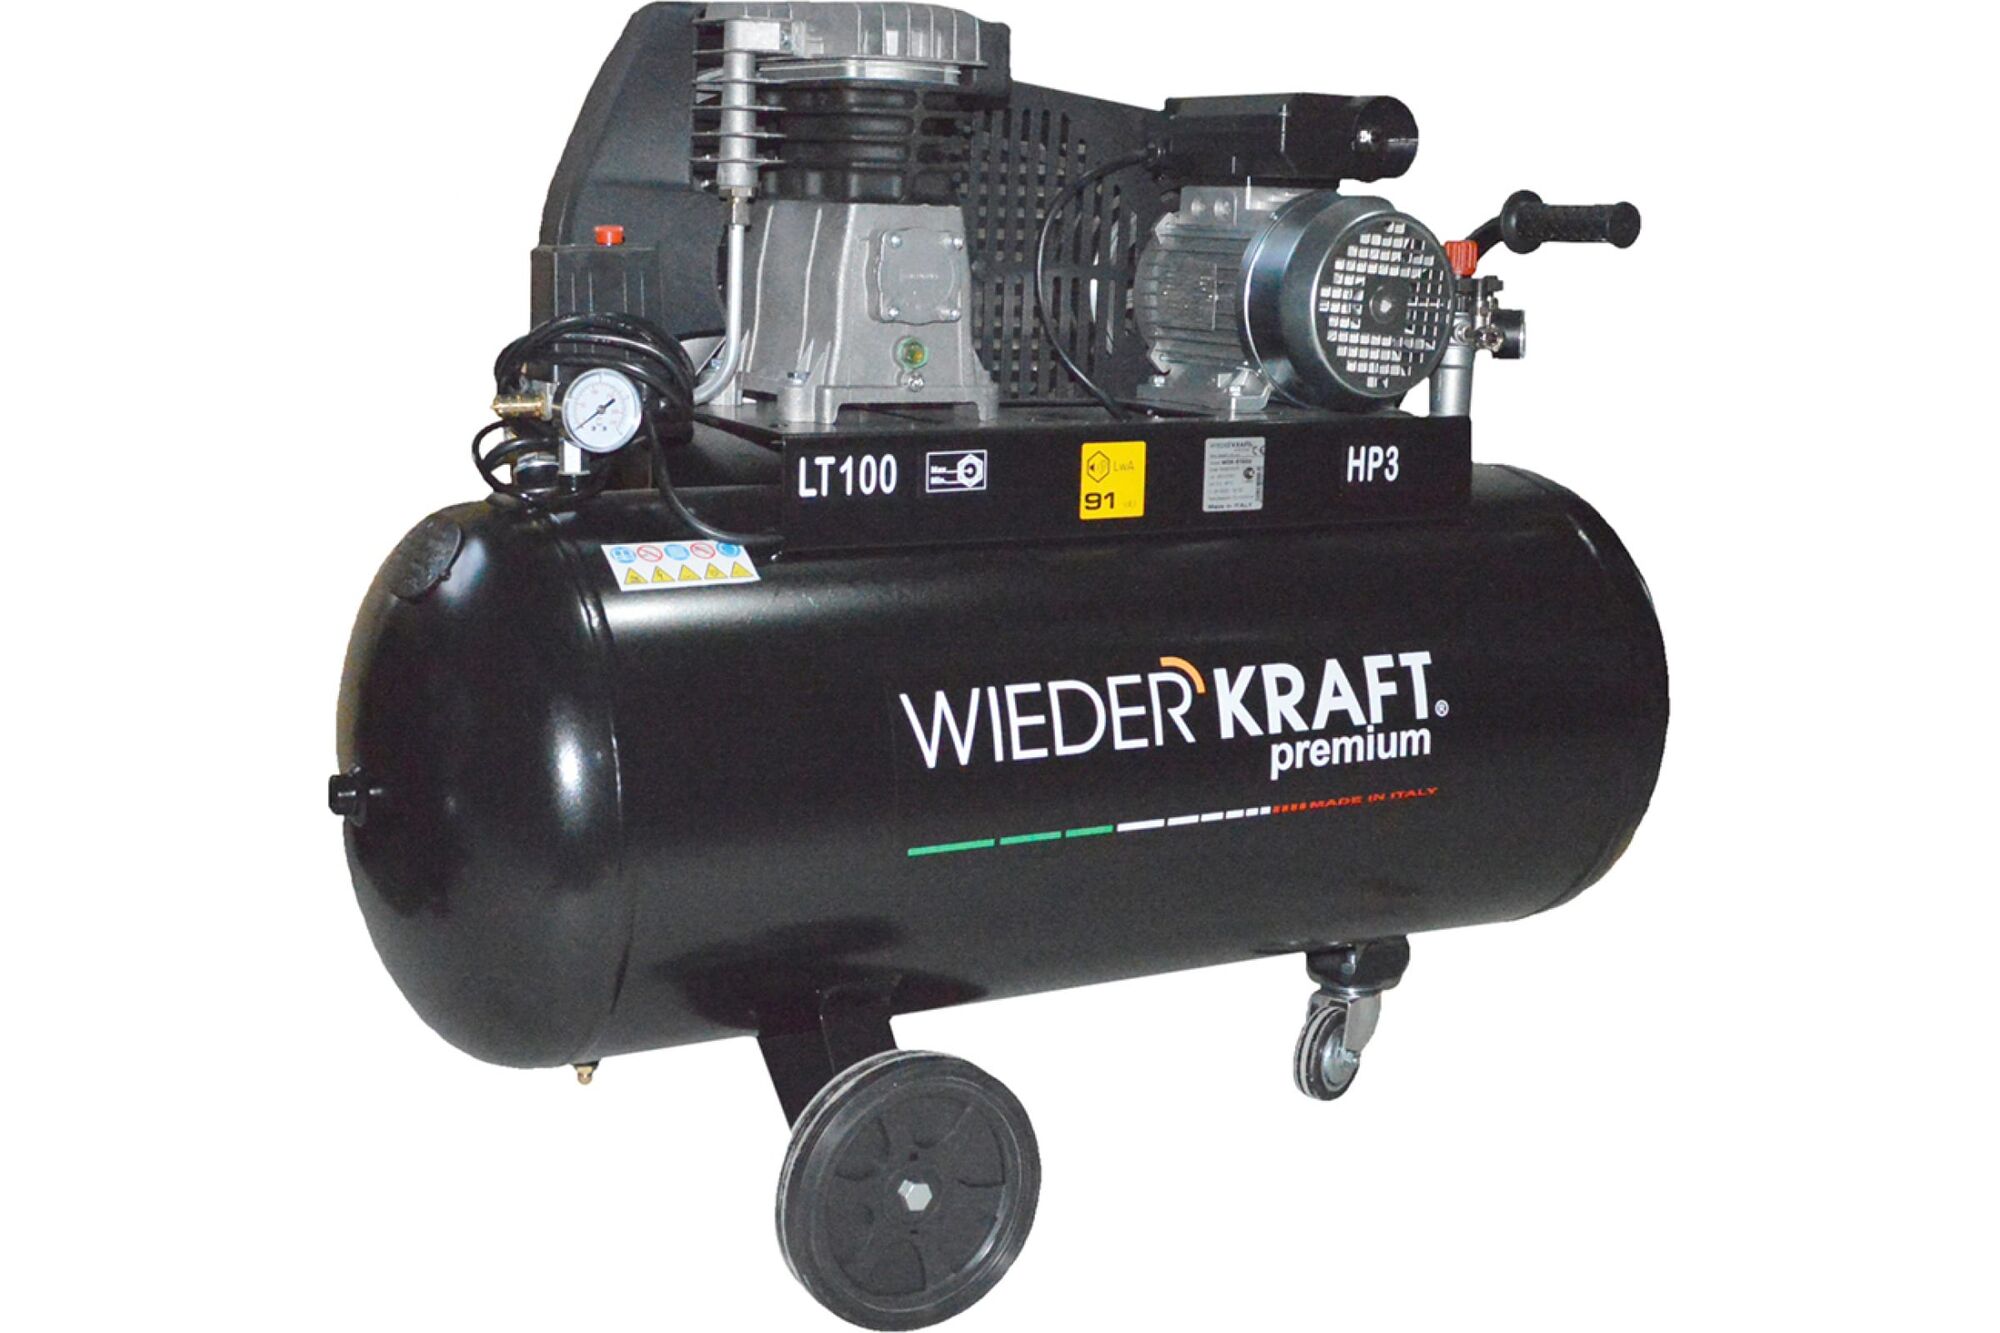 Масляный поршневой компрессор с ременным приводом WIEDERKRAFT 400 л/мин, ресивер 100 л, WDK-91040 WiederKraft